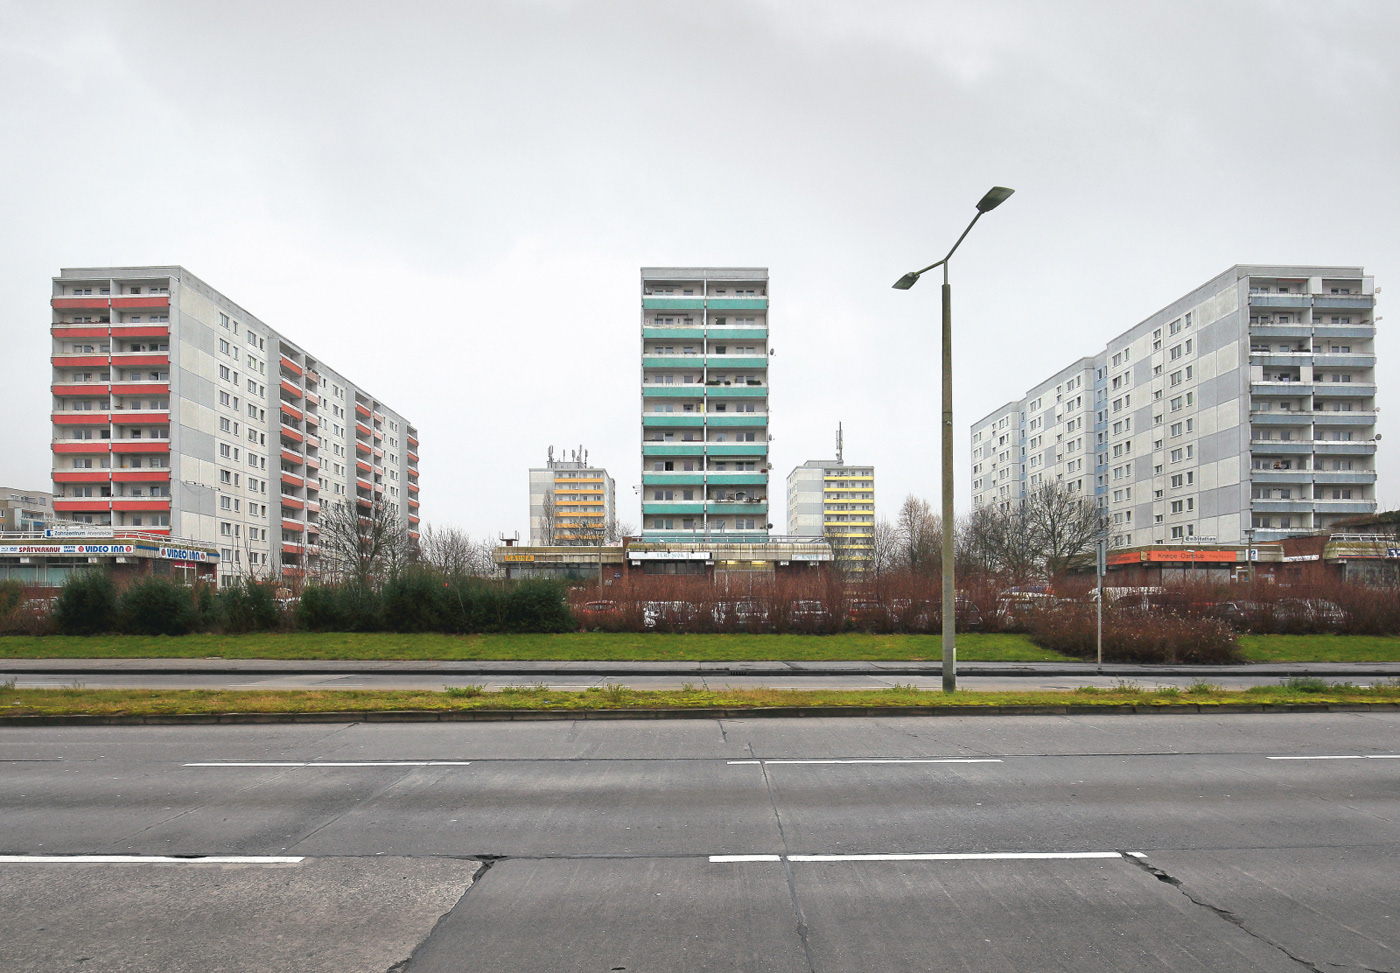 modernism Brutalist concrete suburbia panelhaz blokowisko plattenbau wielkapylta